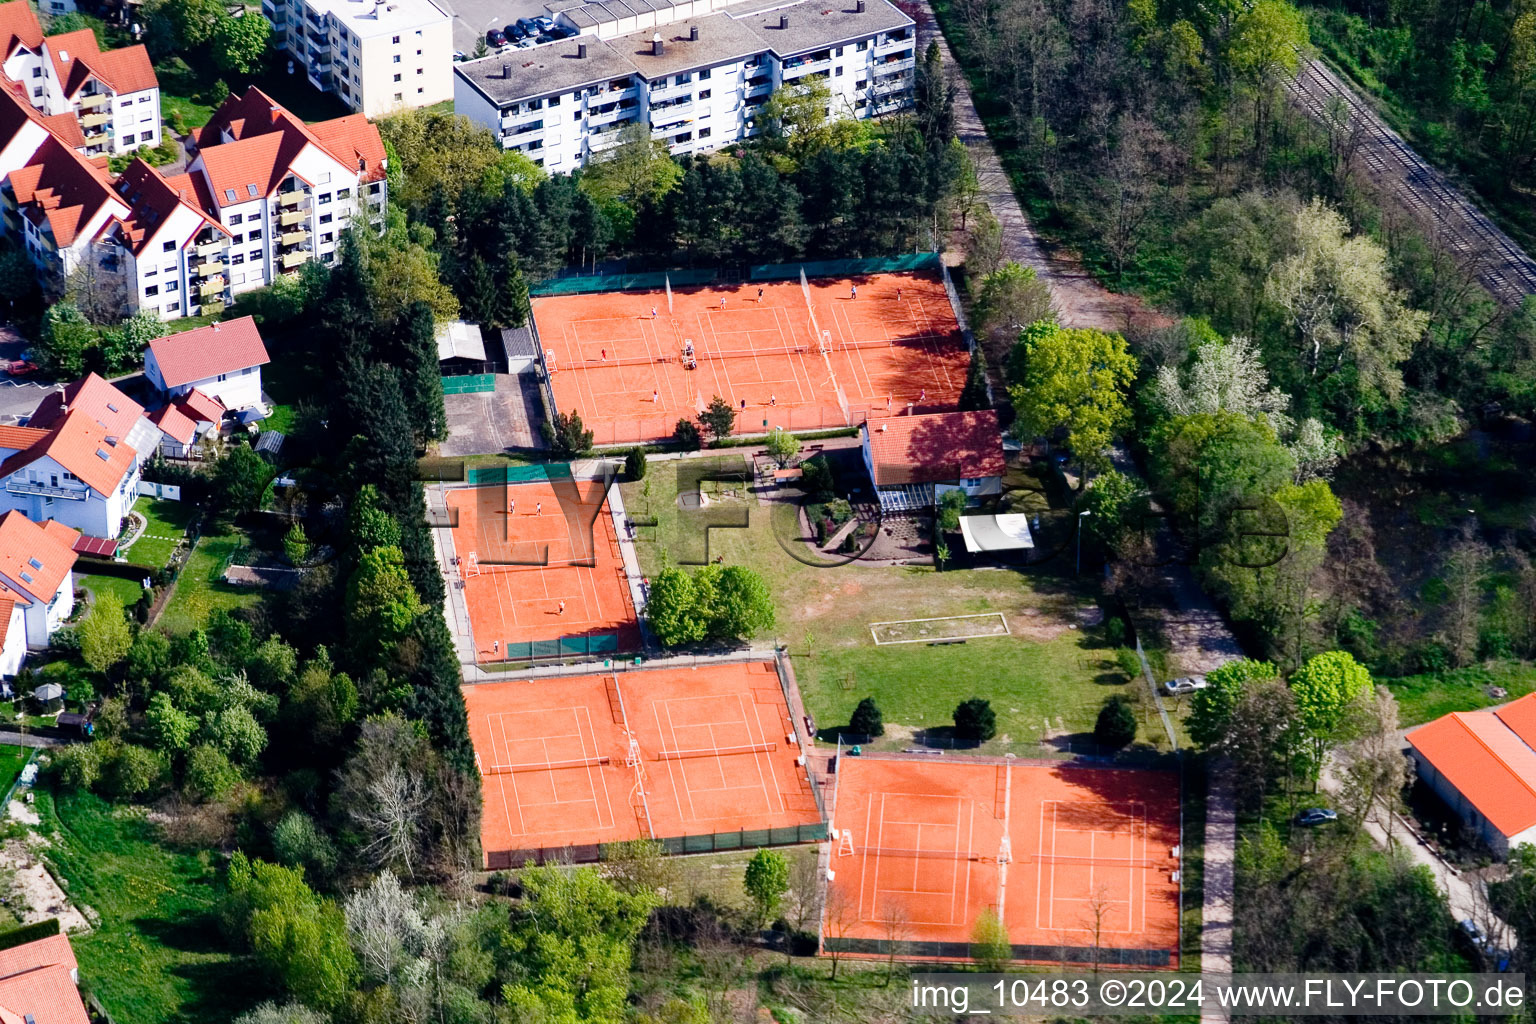 Vue oblique de Club de tennis à Jockgrim dans le département Rhénanie-Palatinat, Allemagne